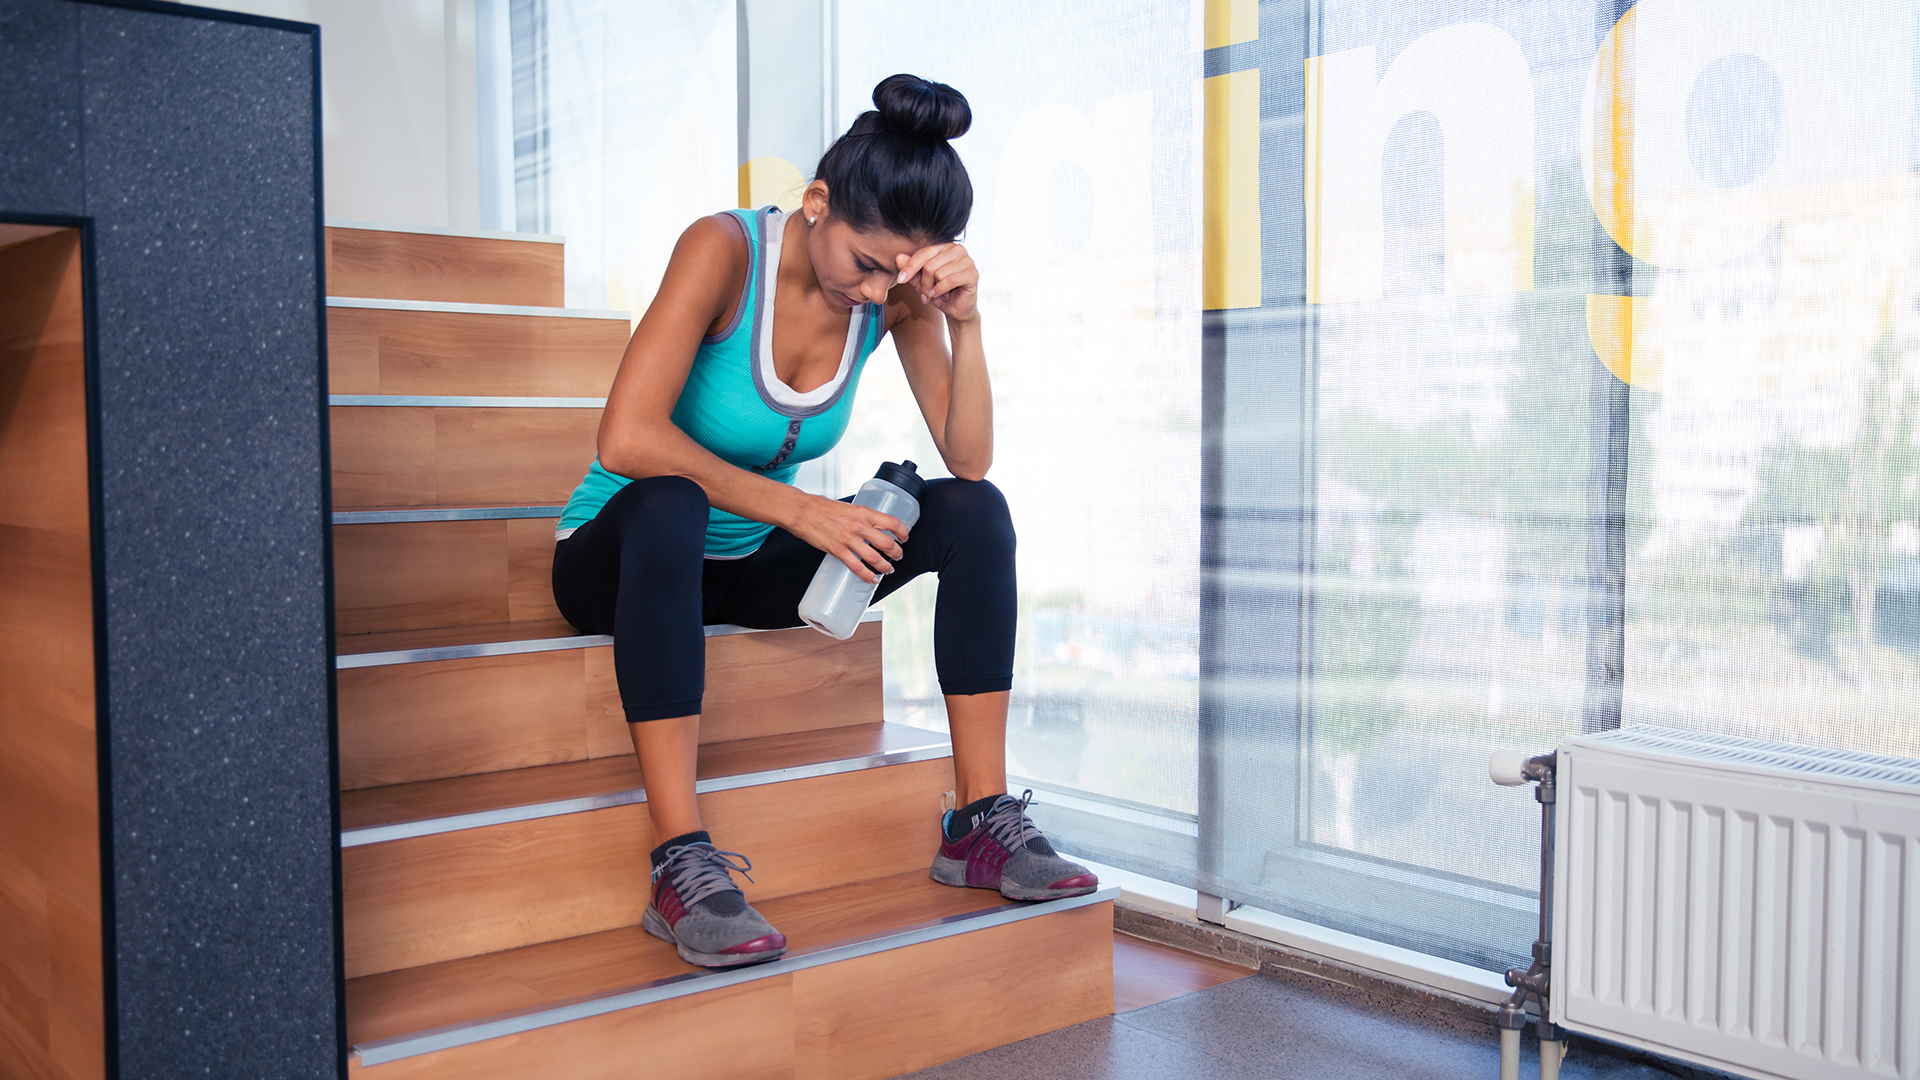 El aumento de peso junto con el sedentarismo, hicieron estragos en los hábitos saludables de gran parte de la población (Shutterstock)